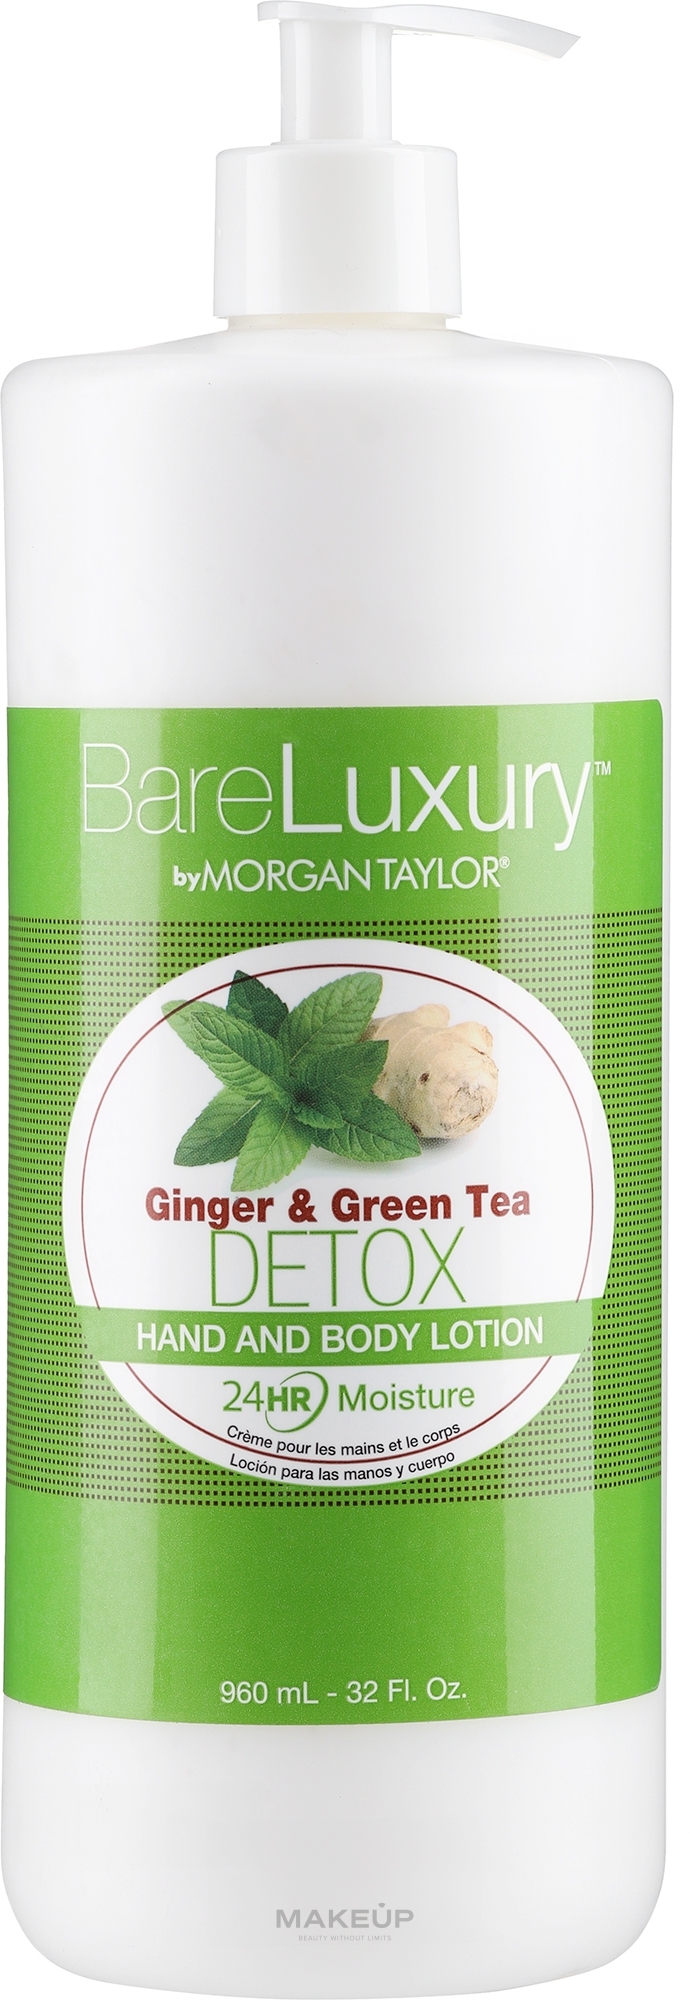 Лосьон для рук и тела "Имбирь и зеленый чай" - Morgan Taylor Bare Luxury Hand & Body Lotion Ginger & Green Tea Detox — фото 960ml